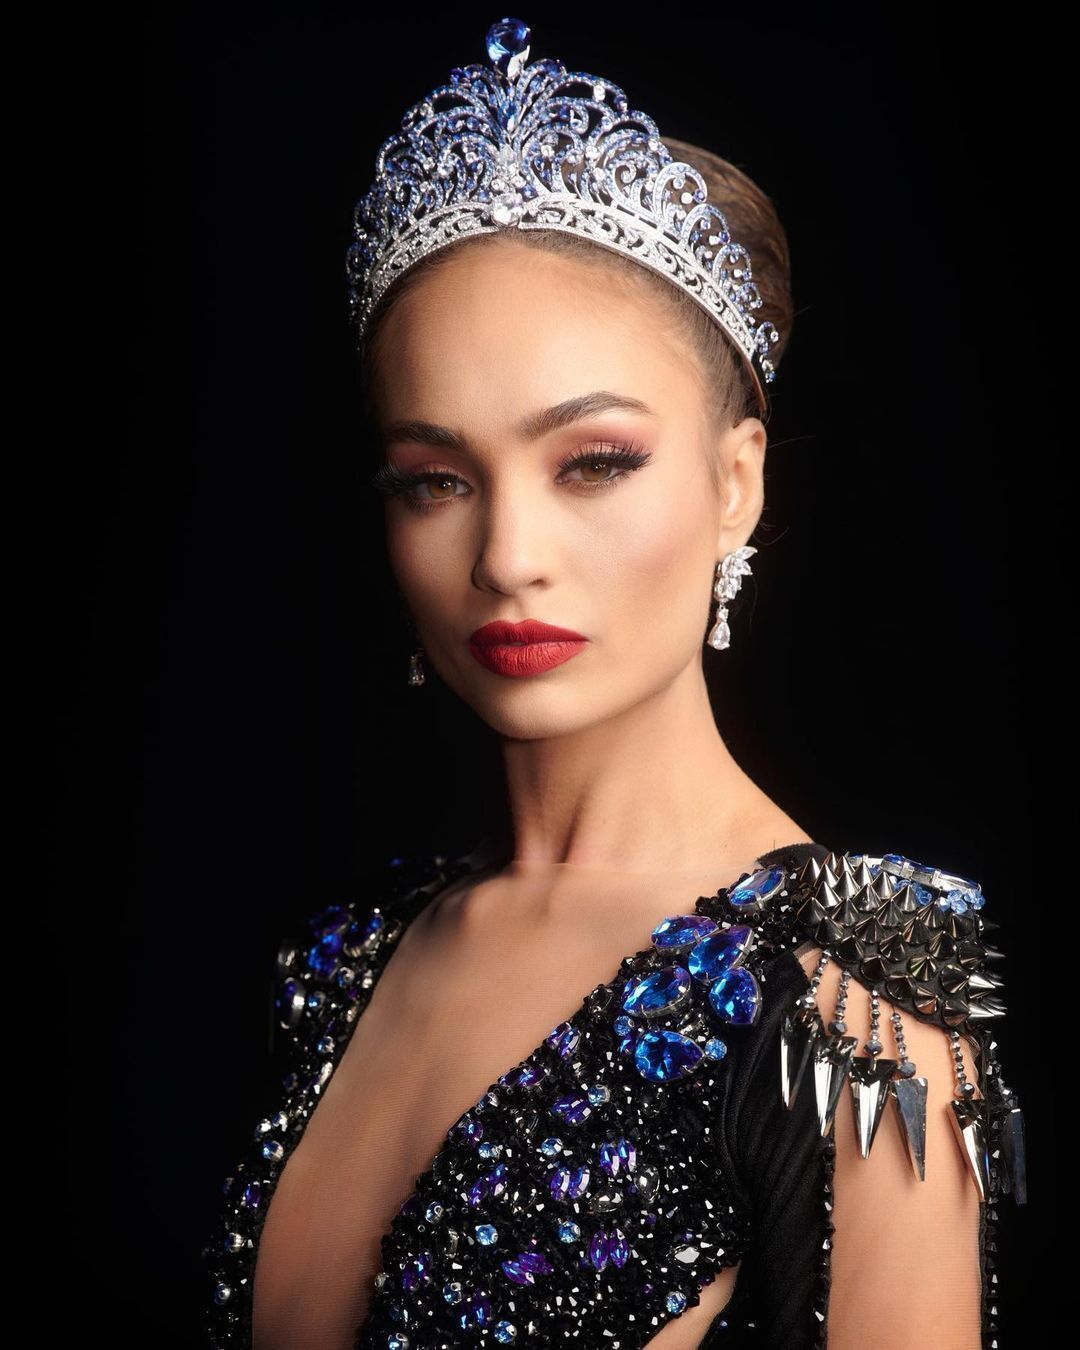 Не один миллион долларов: сеть шокировала стоимость короны на "Мисс Вселенная" с  бриллиантами и сапфирами